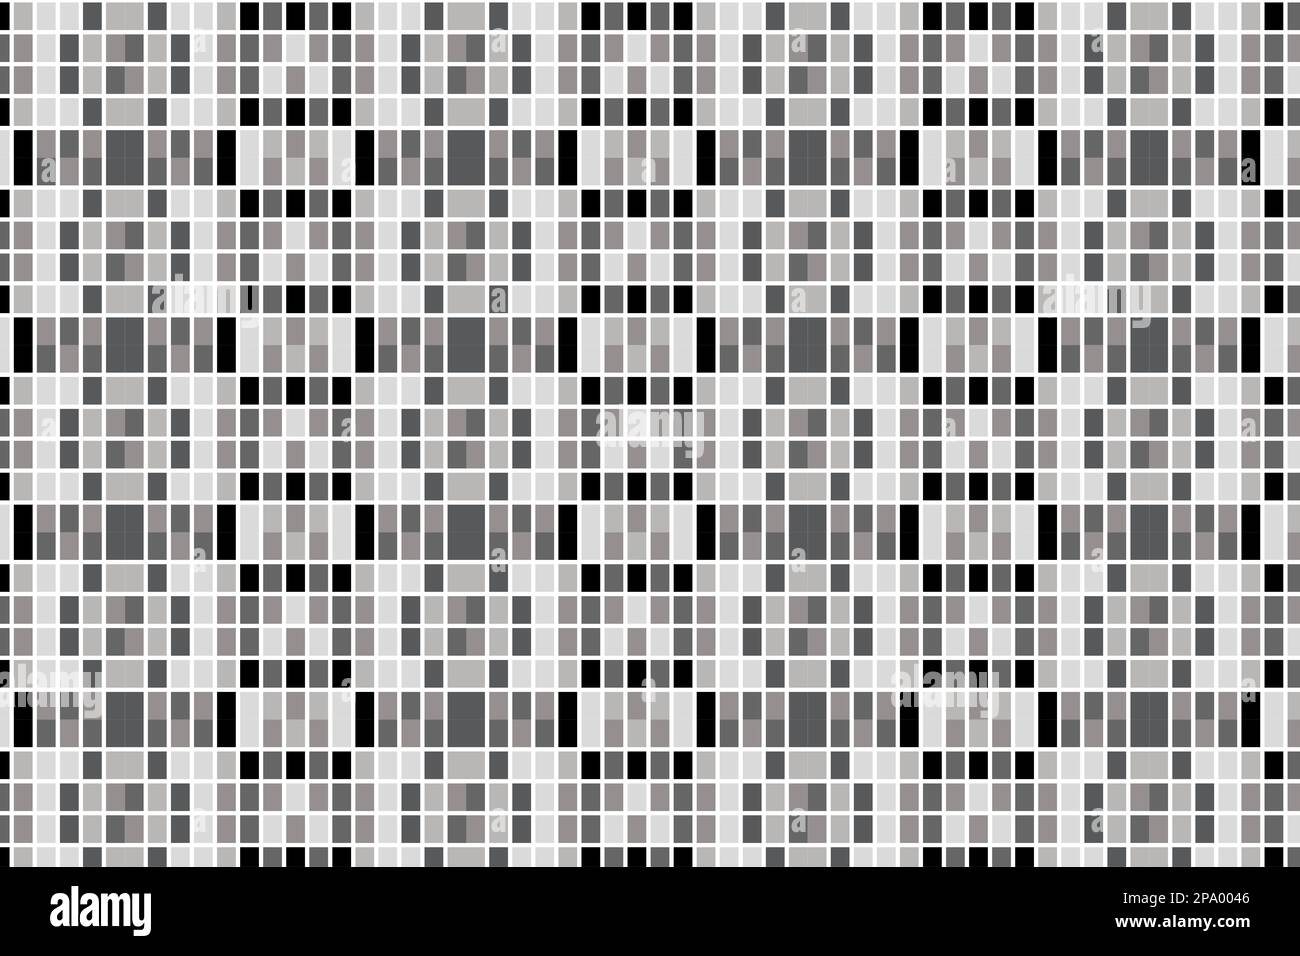 Schwarz-weiße Pixel Pixel nahtloses Muster Hintergrunddesign, kleine Blöcke nahtlose Pixelmuster Stockfoto